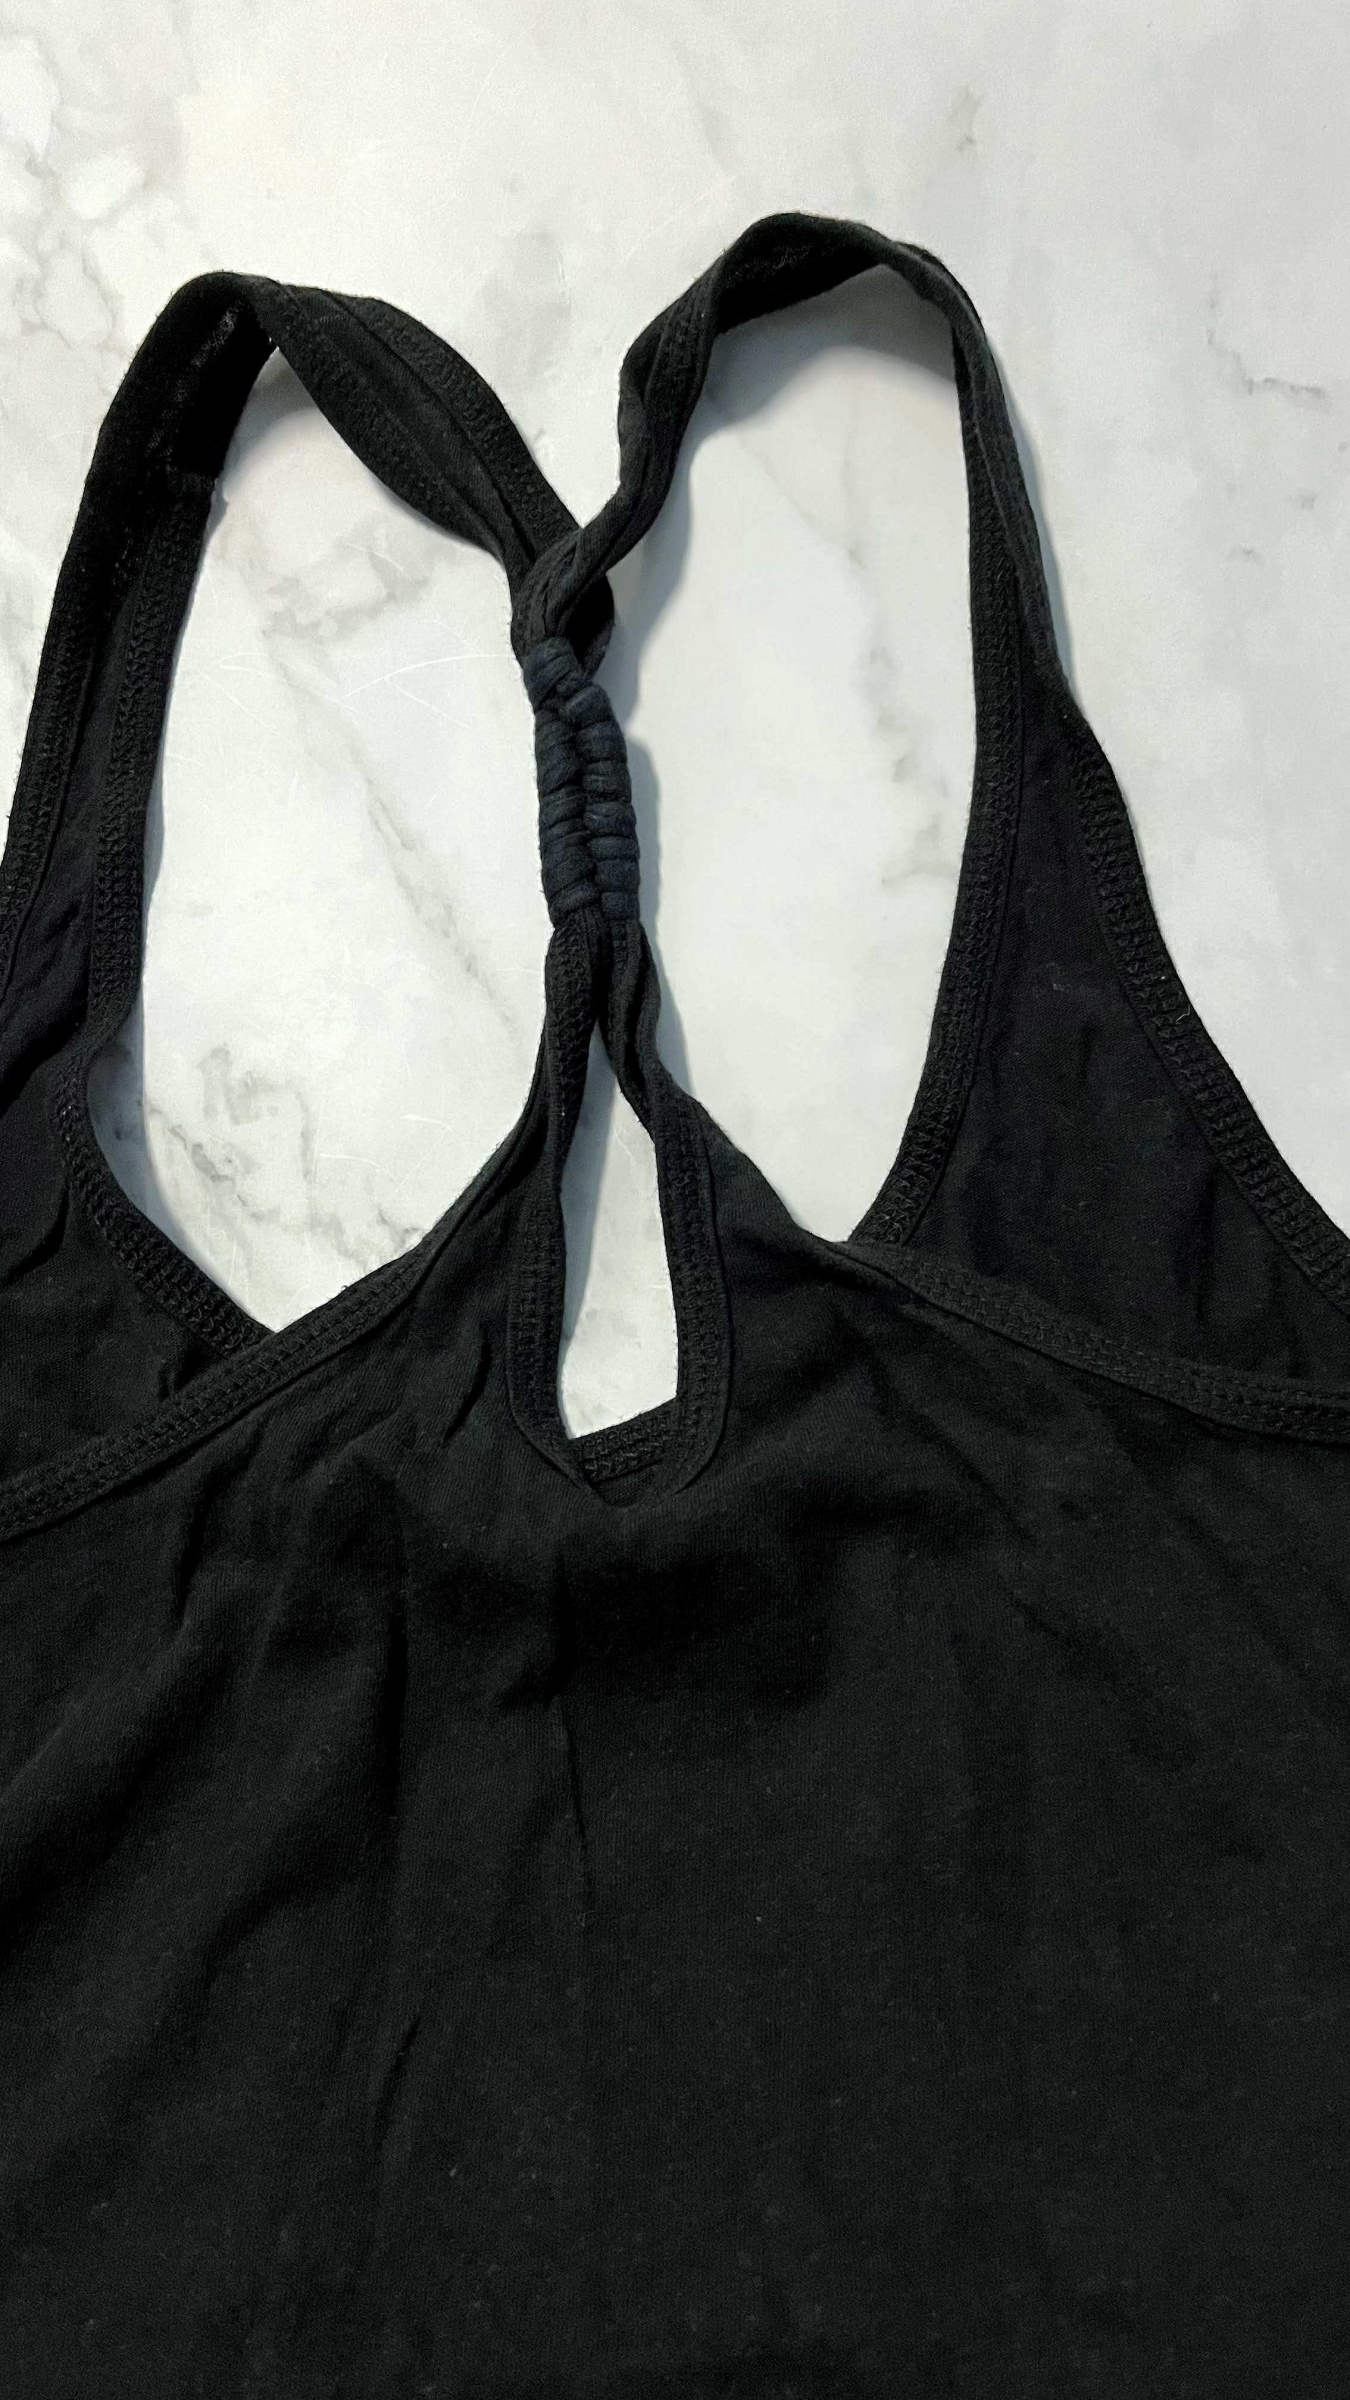 澳洲平價時尚 黑色無袖背心 女上衣 「購物是我的有氧運動外搭」 運動 籃球 游泳 海邊 Cotton On Active Body 尺寸S 二手非全新 79起標